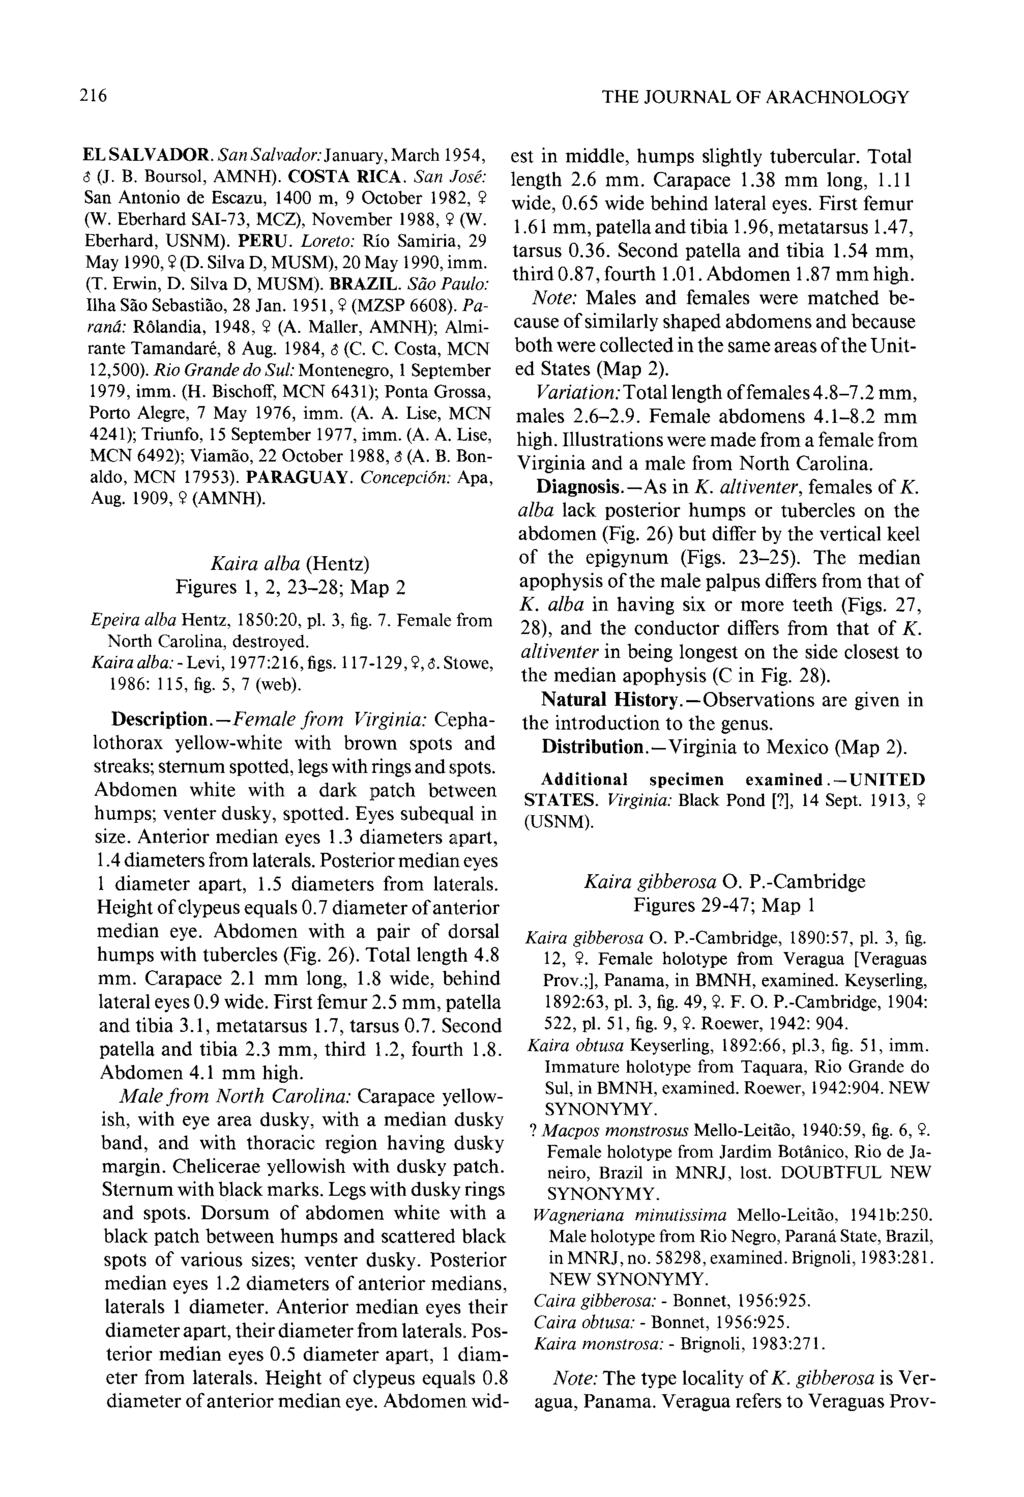 216 THE JOURNAL OF ARACHNOLOG Y EL SALVADOR. San Salvador:January, March 1954, (J. B. Boursol, AMNH). COSTA RICA. San Jose: San Antonio de Escazu, 1400 m, 9 October 1982,? (W.